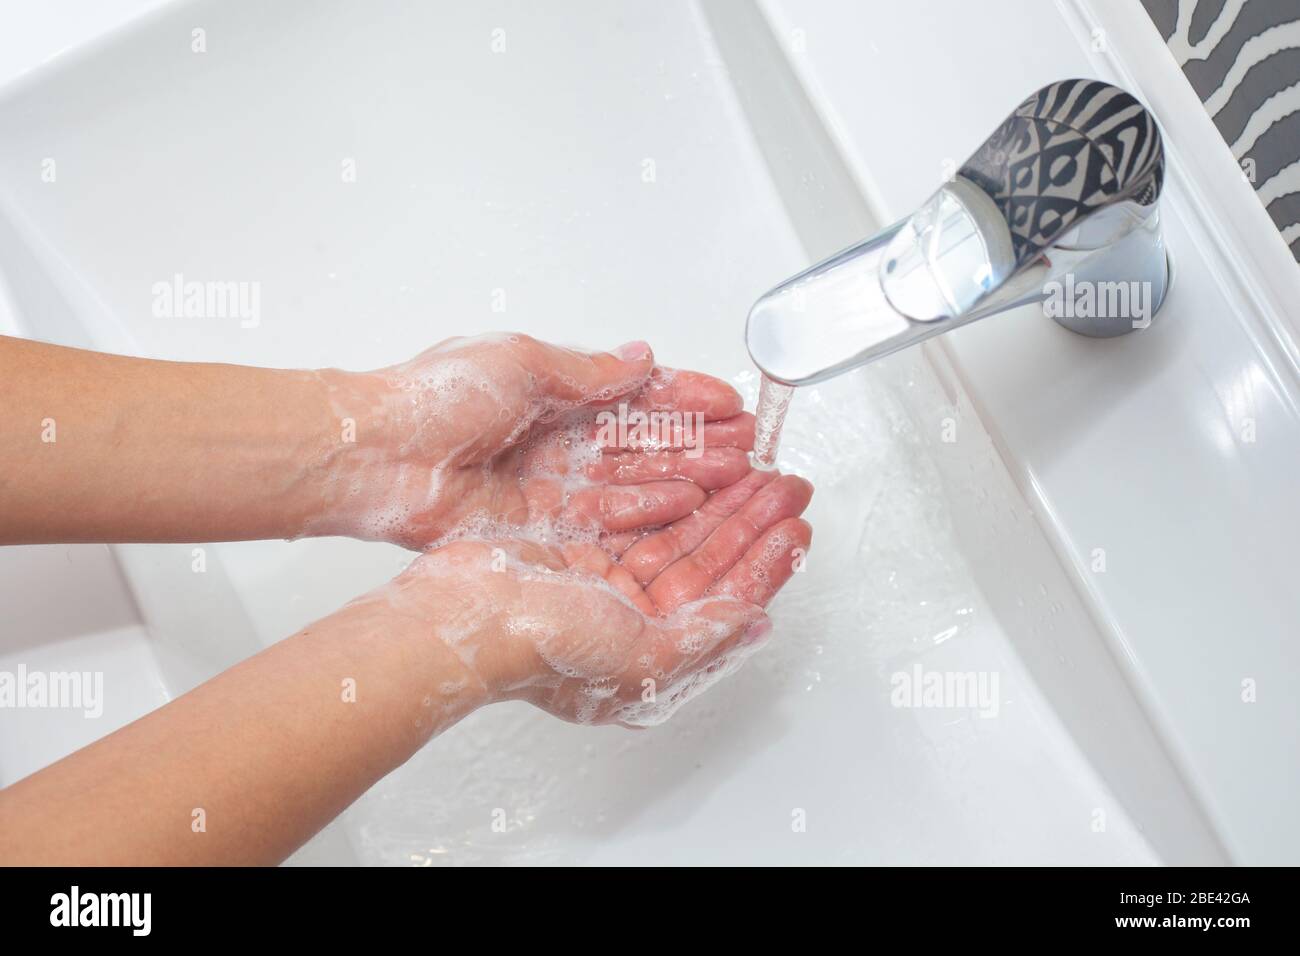 Lavage des mains. Une femme utilise du savon et se lave les mains sous le robinet. Concept d'hygiène. Gros plan Banque D'Images